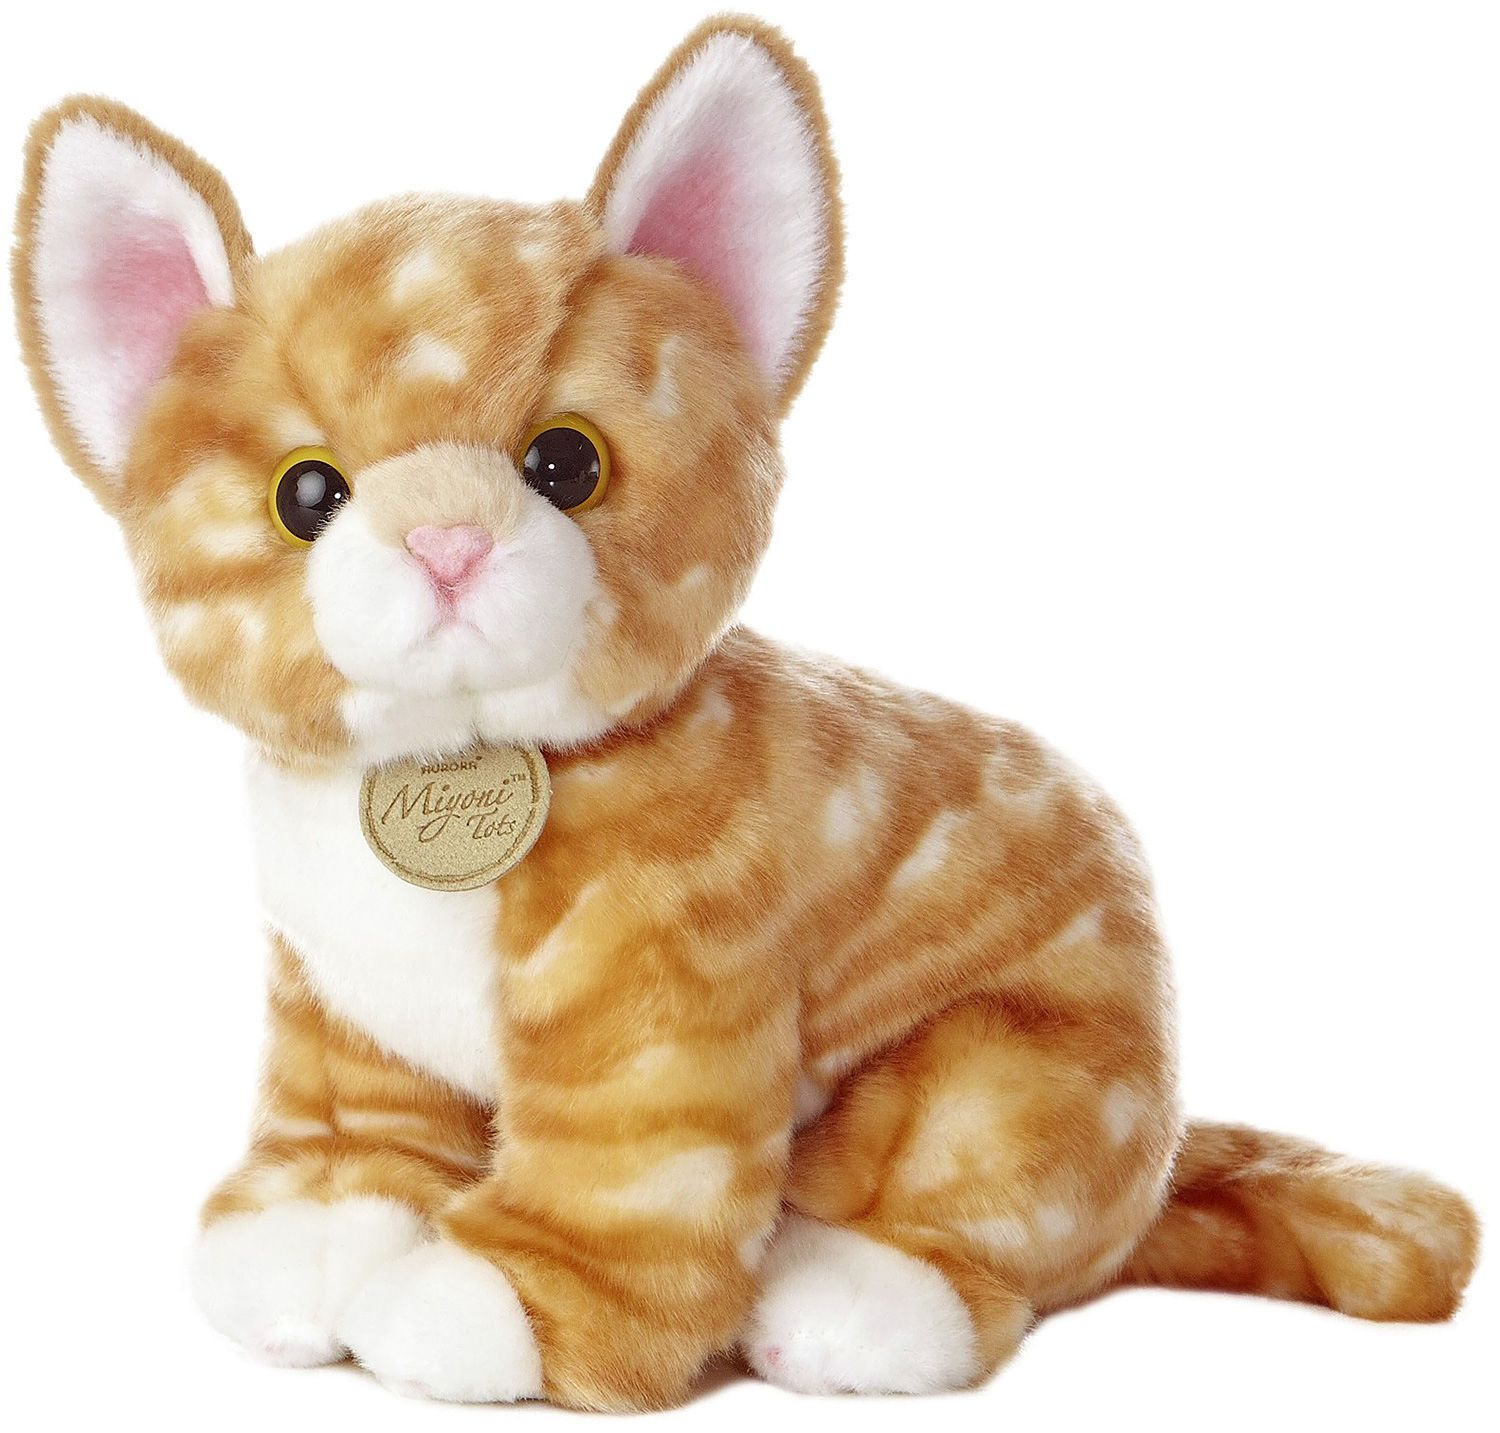 Купить игрушку кошечка. Игрушка мягкая Aurora кошка оранжевый табби. Игрушки Aurora Miyoni кошки. Miyoni by Aurora кошка. Игрушка мягкая Aurora кошка оранж.